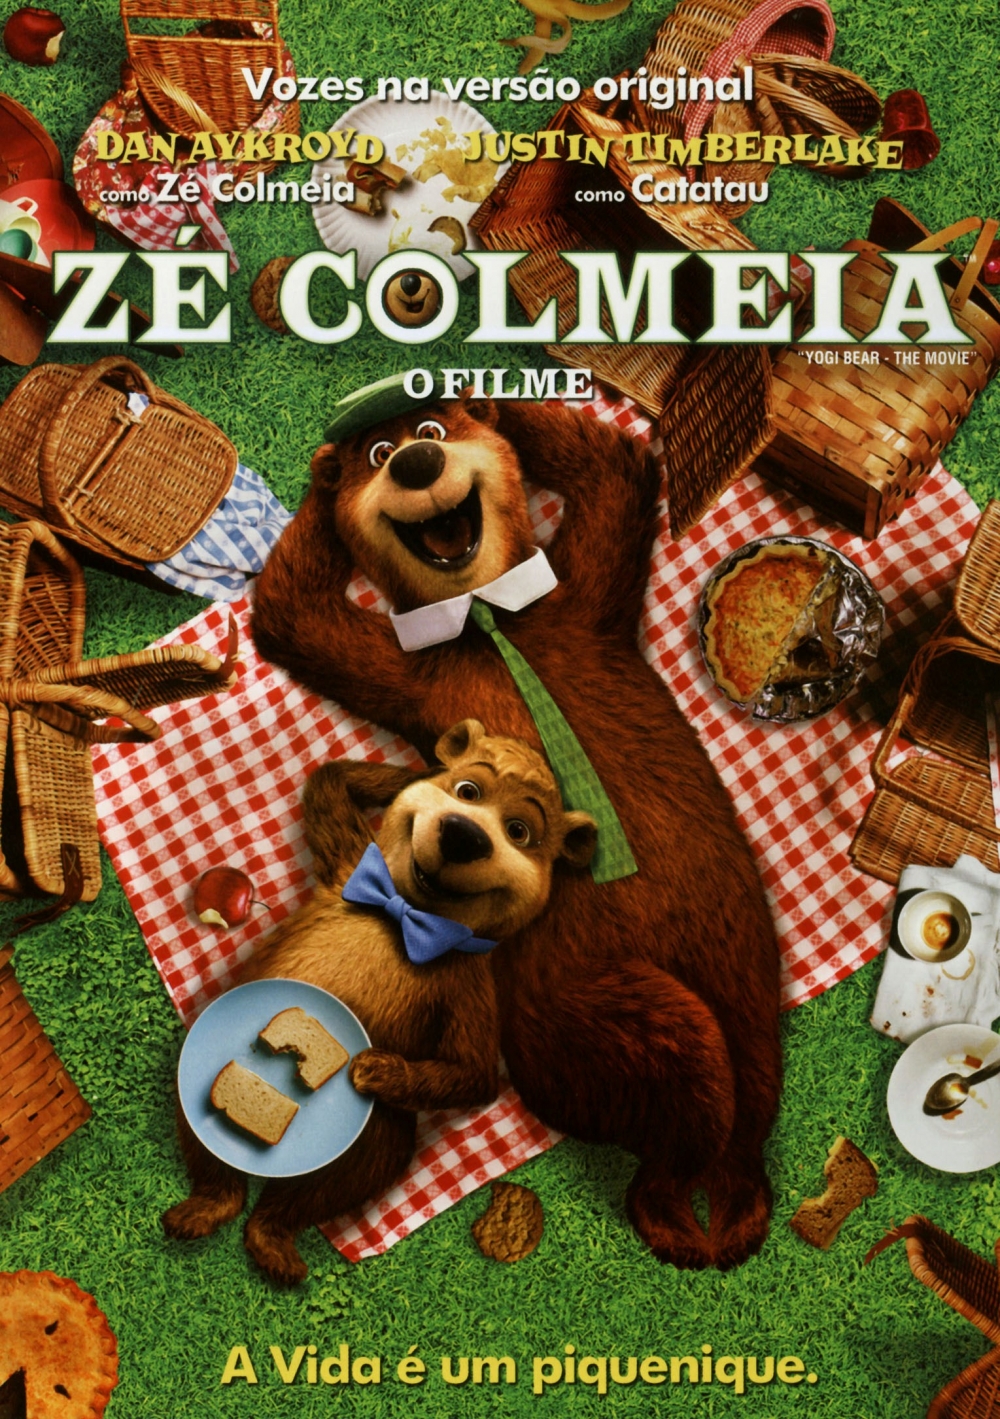 Zé Colmeia